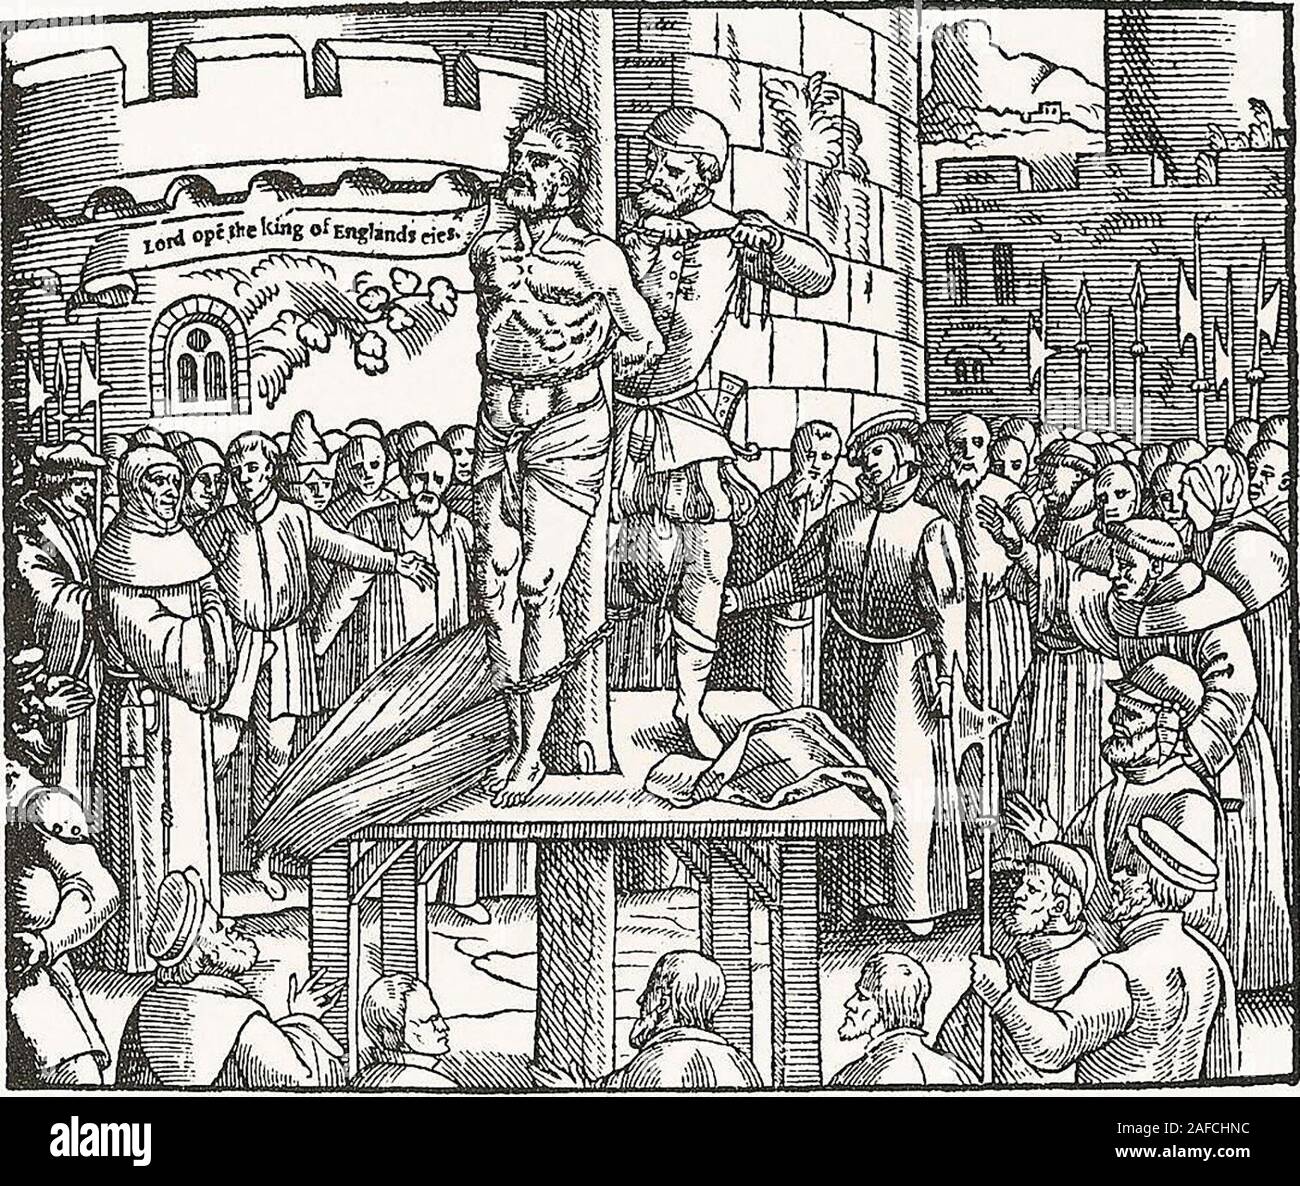 Die Vorbereitungen der Körper von William Tyndale, 1563 zu brennen. Tyndale, bevor erdrosselt und auf dem Scheiterhaufen verbrannt, in Vilvoorde schreit auf: "Herr, öffne die Augen des Königs von England". Stockfoto